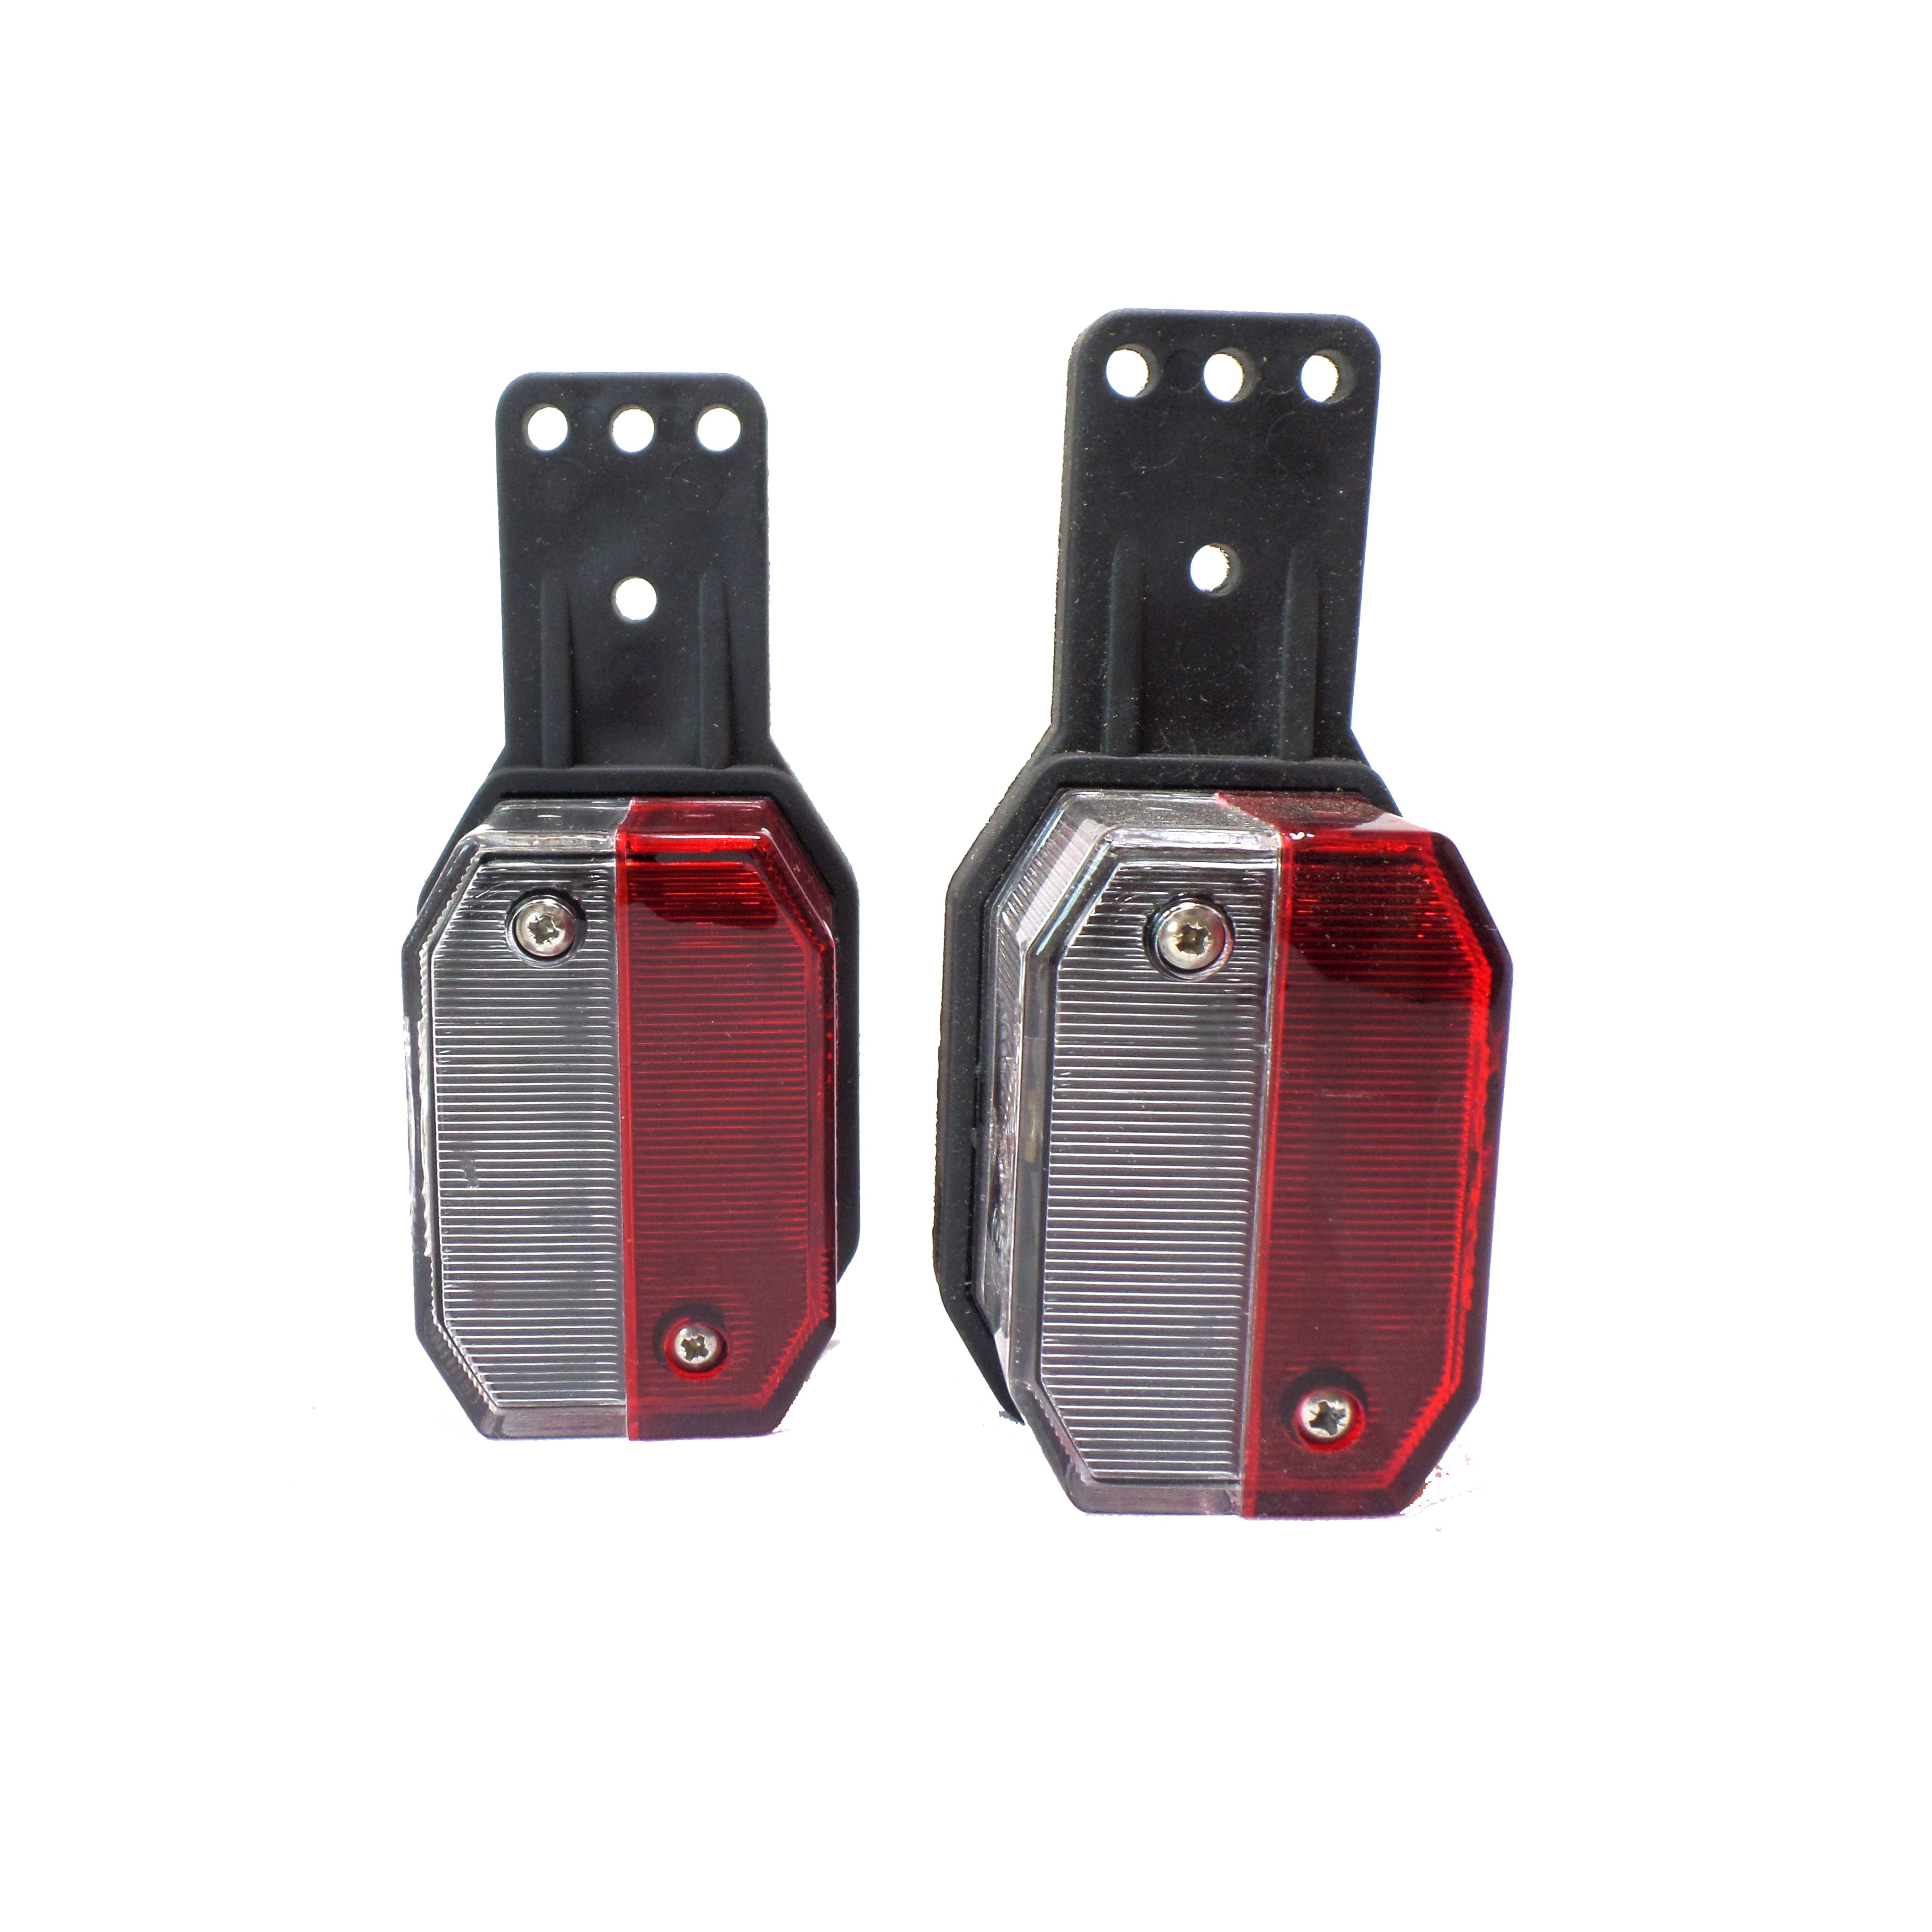 Anhänger-Rückleuchte weiß Flexipoint / Positionsleuchte Leuchtmittel, rot/weiß, 2x ohne rot Umrissleuchte - Aspöck